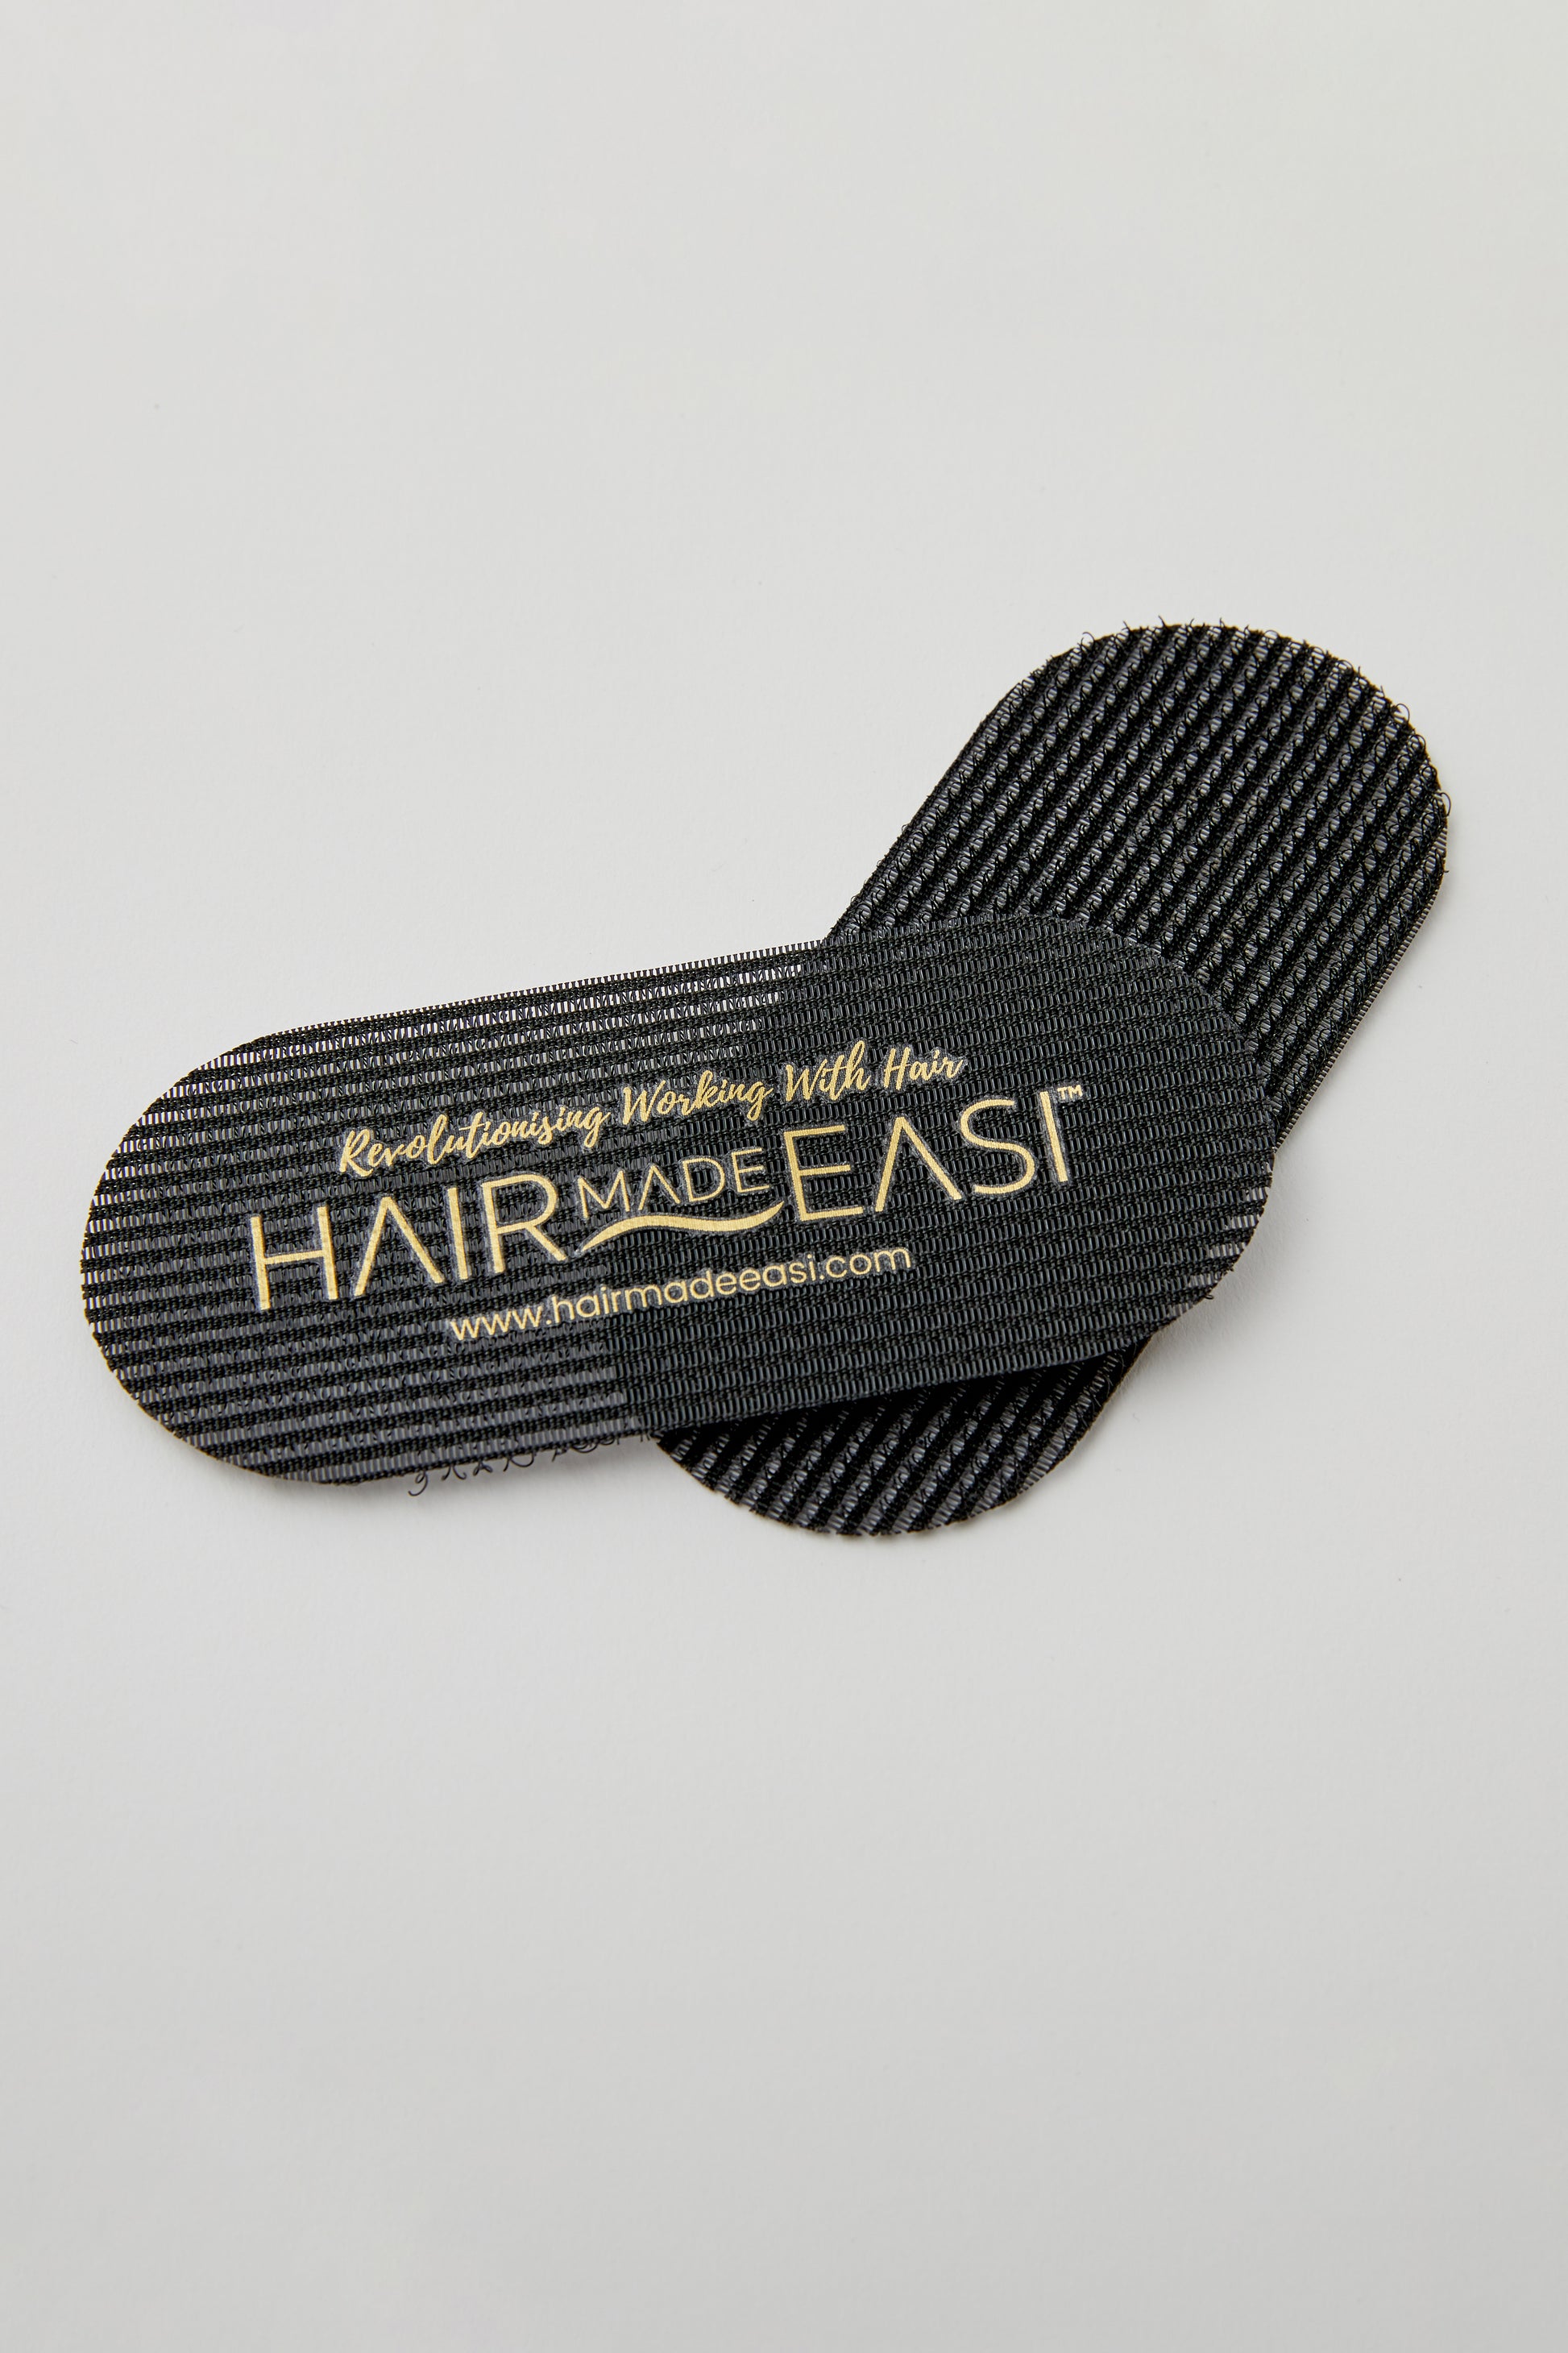 Hairmadeeasi-Easigrip-Hair-Gripper-Pads